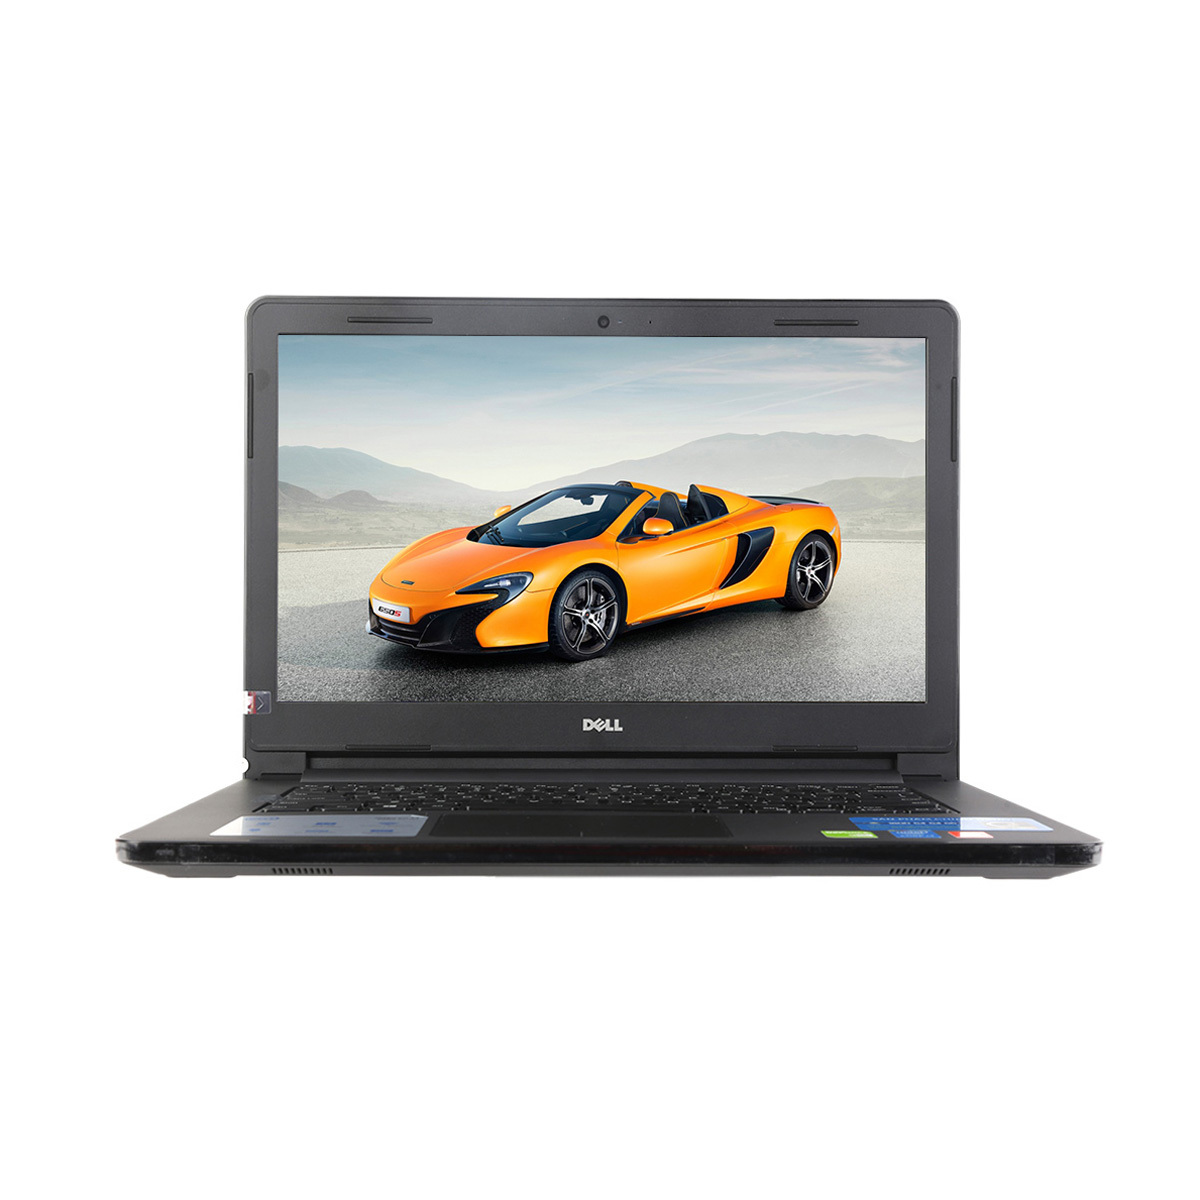 Laptop Dell Inspiron N3458-70073955 - Core i3-5005U, Ram 4GB, HDD 500GB, Nvidia Geforce GT820M 2GB, 14.0 inch